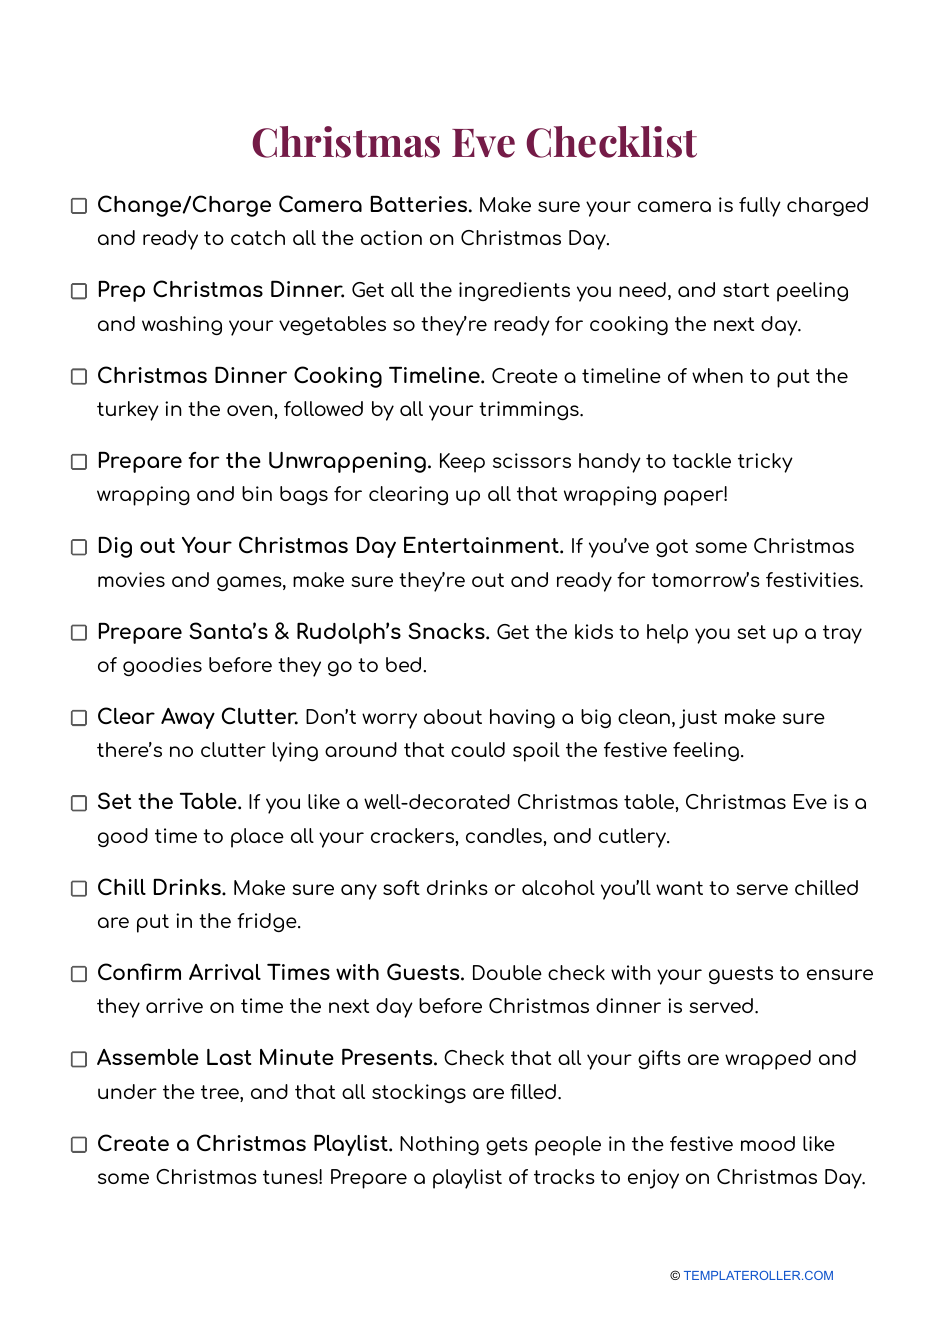 Christmas Eve Checklist Template - Printable Image